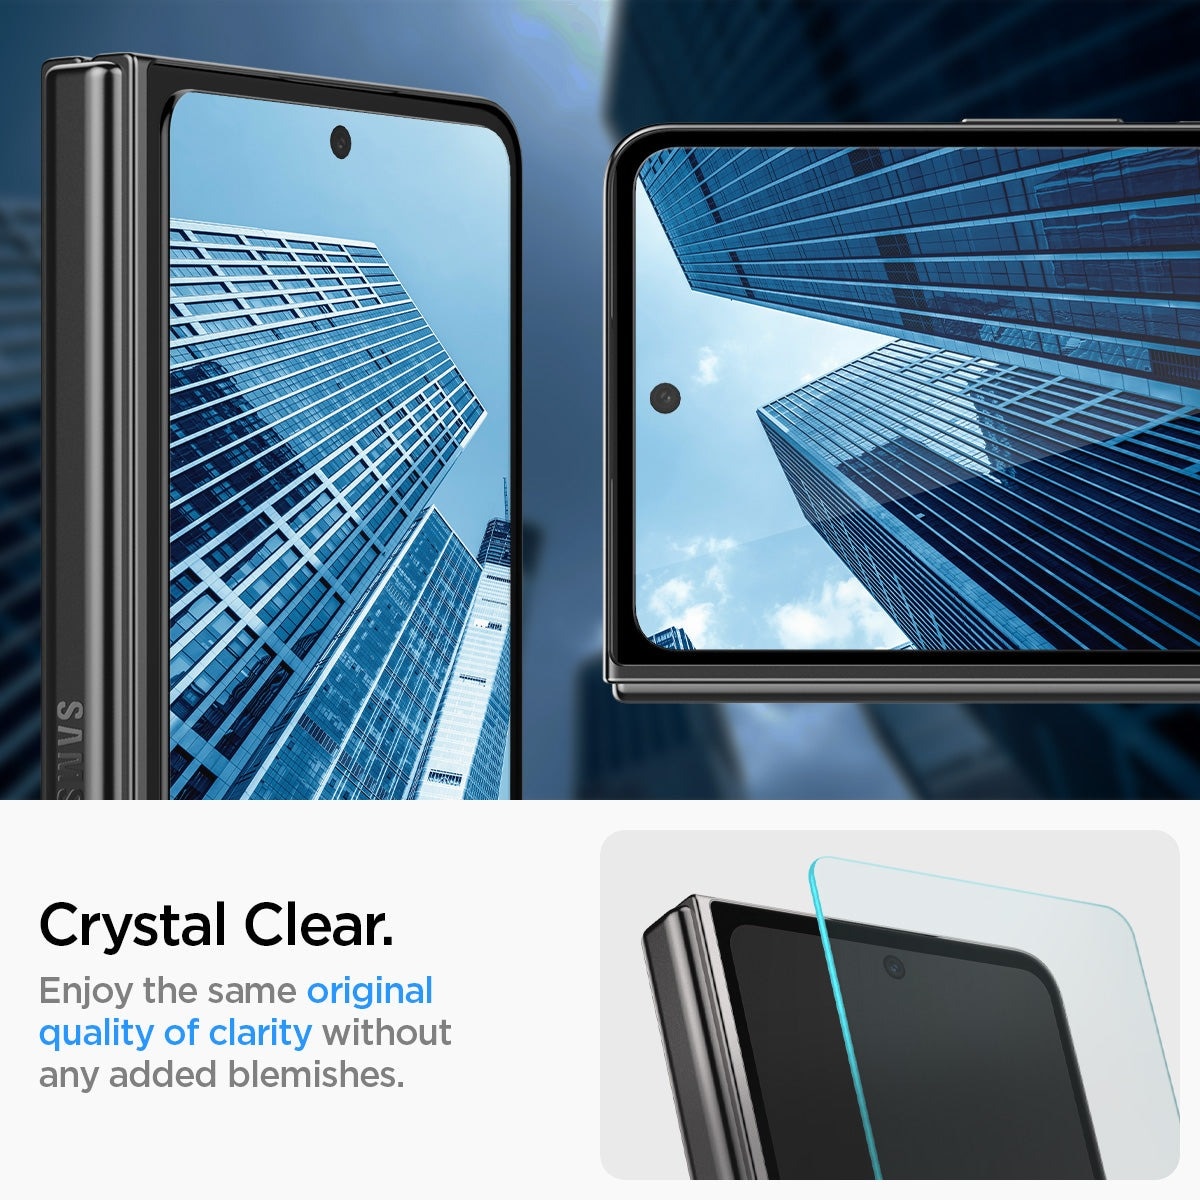 Galaxy Z Fold 5 Ytterskärmskydd med installationsram (2-pack) GLAS.tR EZ Fit